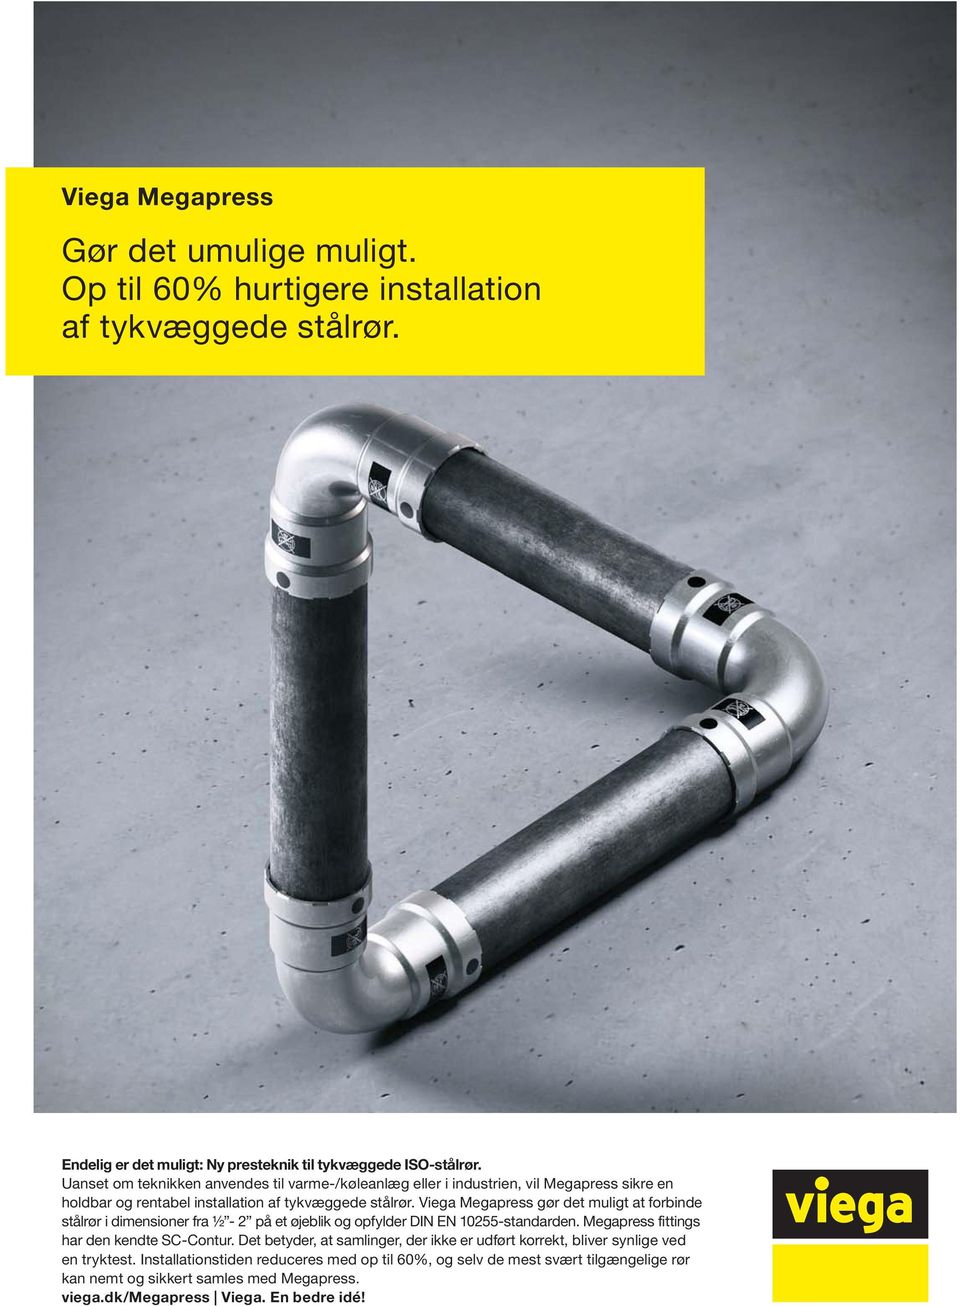 Viega Megapress gør det muligt at forbinde stålrør i dimensioner fra ½ - 2 på et øjeblik og opfylder DIN EN 10255-standarden. Megapress fittings har den kendte SC-Contur.